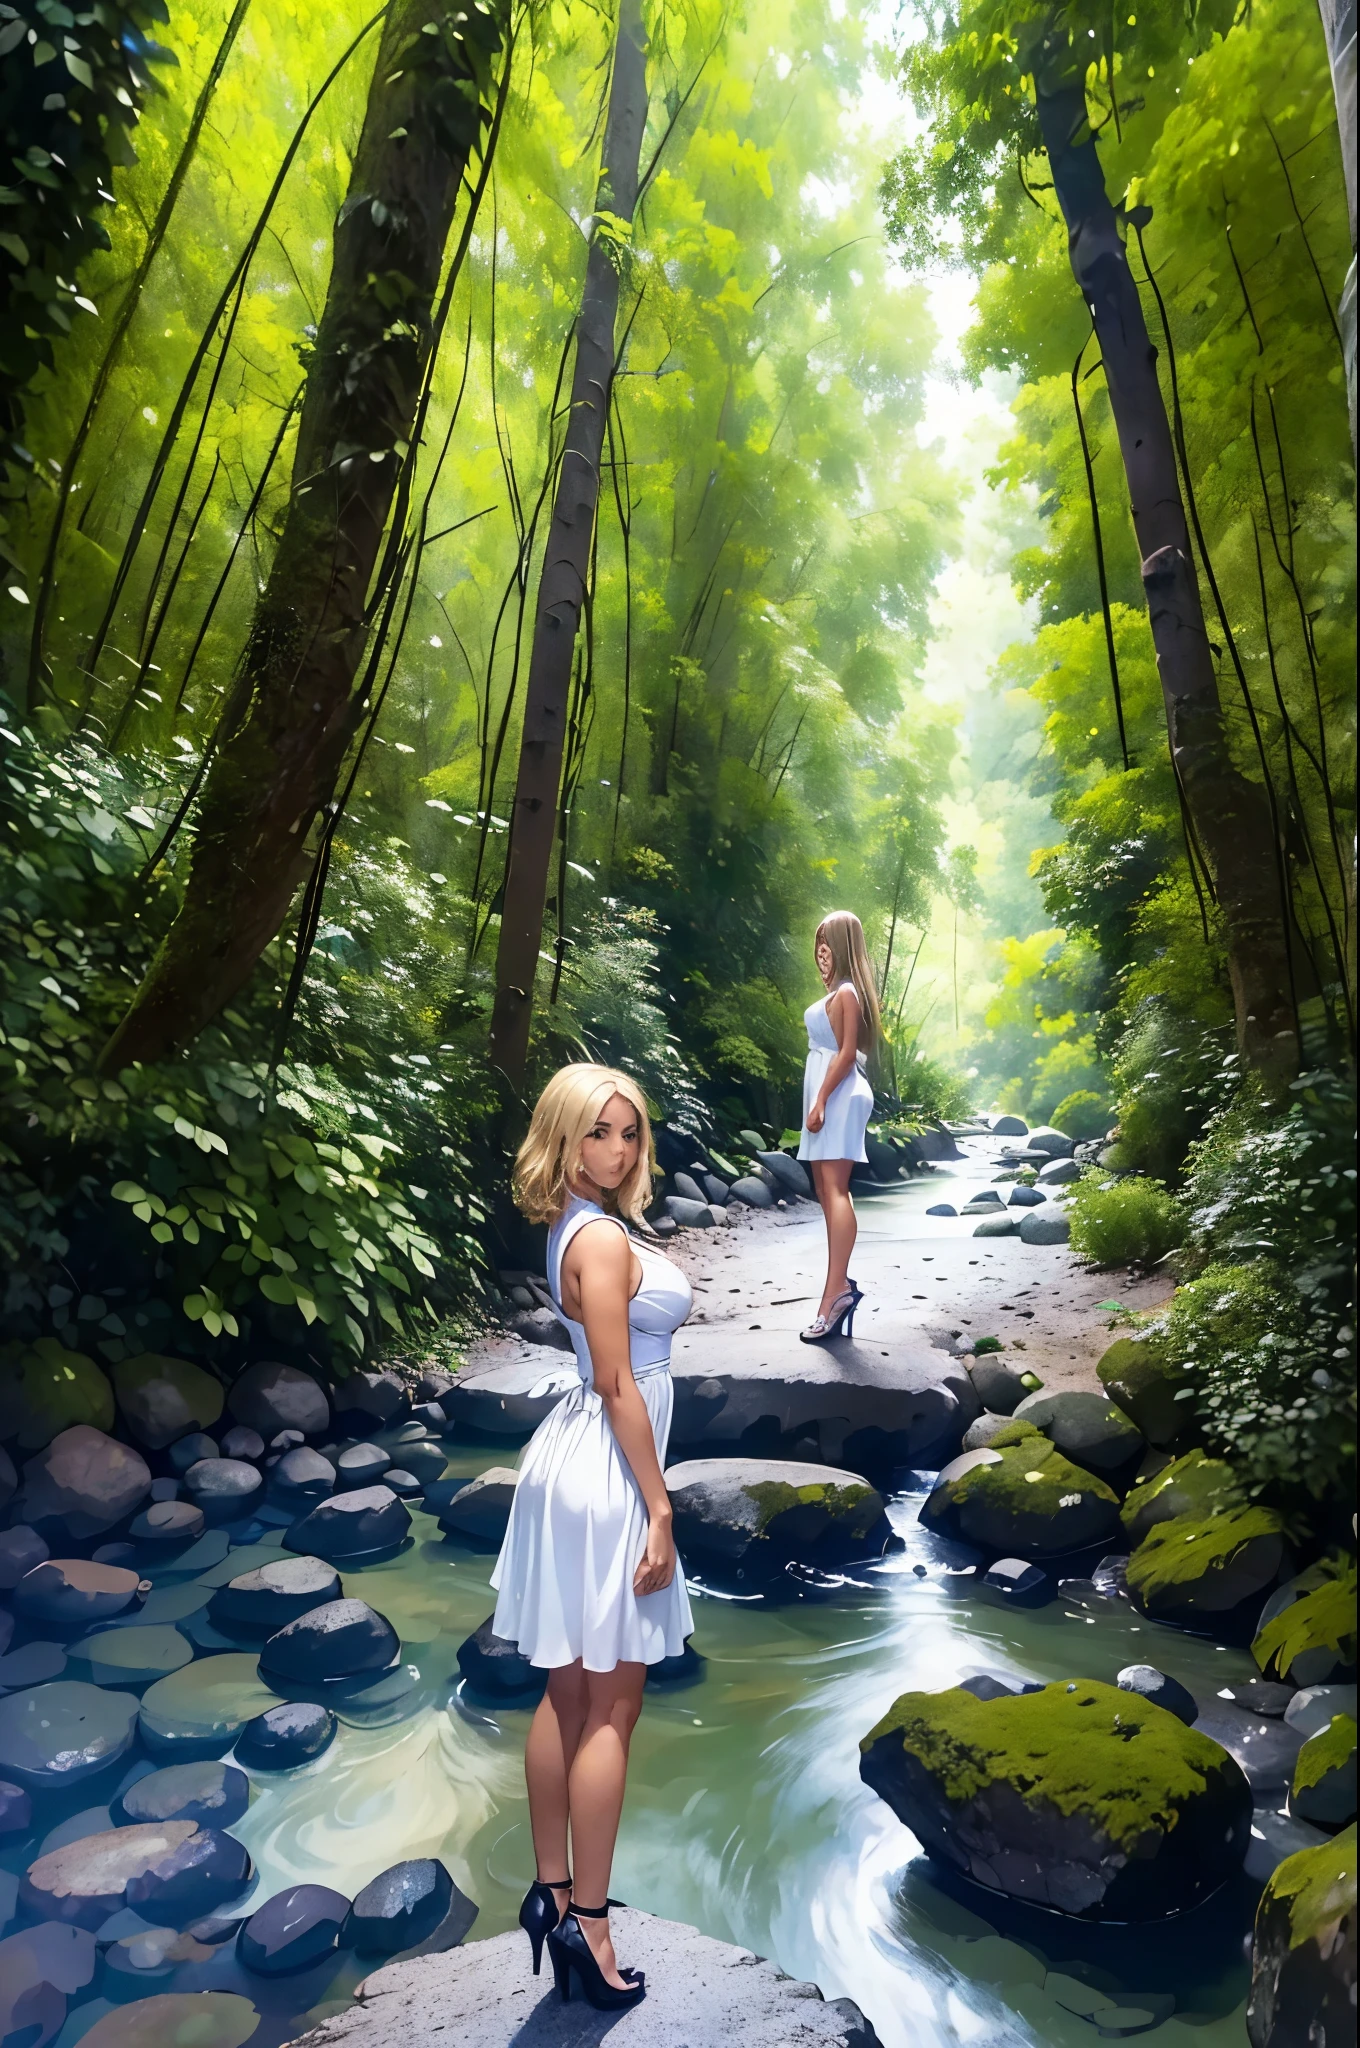 ((Beste Qualität)), ((Meisterwerk)), (Ausführlich), perfektes Gesicht, ein schönes, Blondes Mädchen im Anime-Stil steht auf einem Steinpfad in der Nähe eines Flusses. Sie trägt ein kurzes weißes Kleid und High Heels. Die Umgebung besteht aus einem Wald mit vielen Bäumen und einem Himmel mit Wolken.